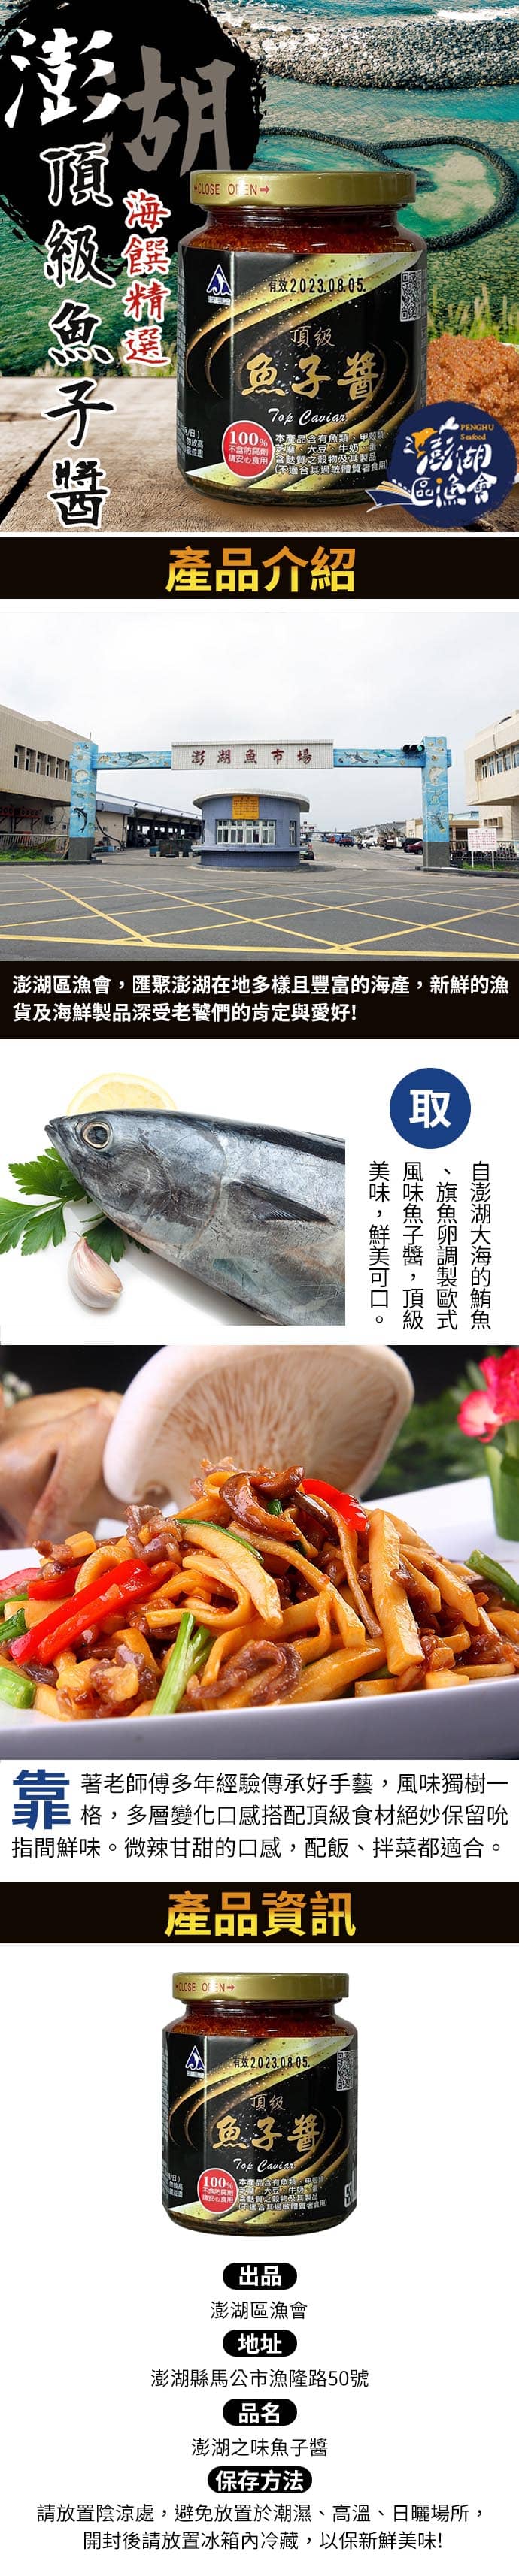 澎湖區漁會 澎湖之味頂級魚子醬260gX2罐好評推薦